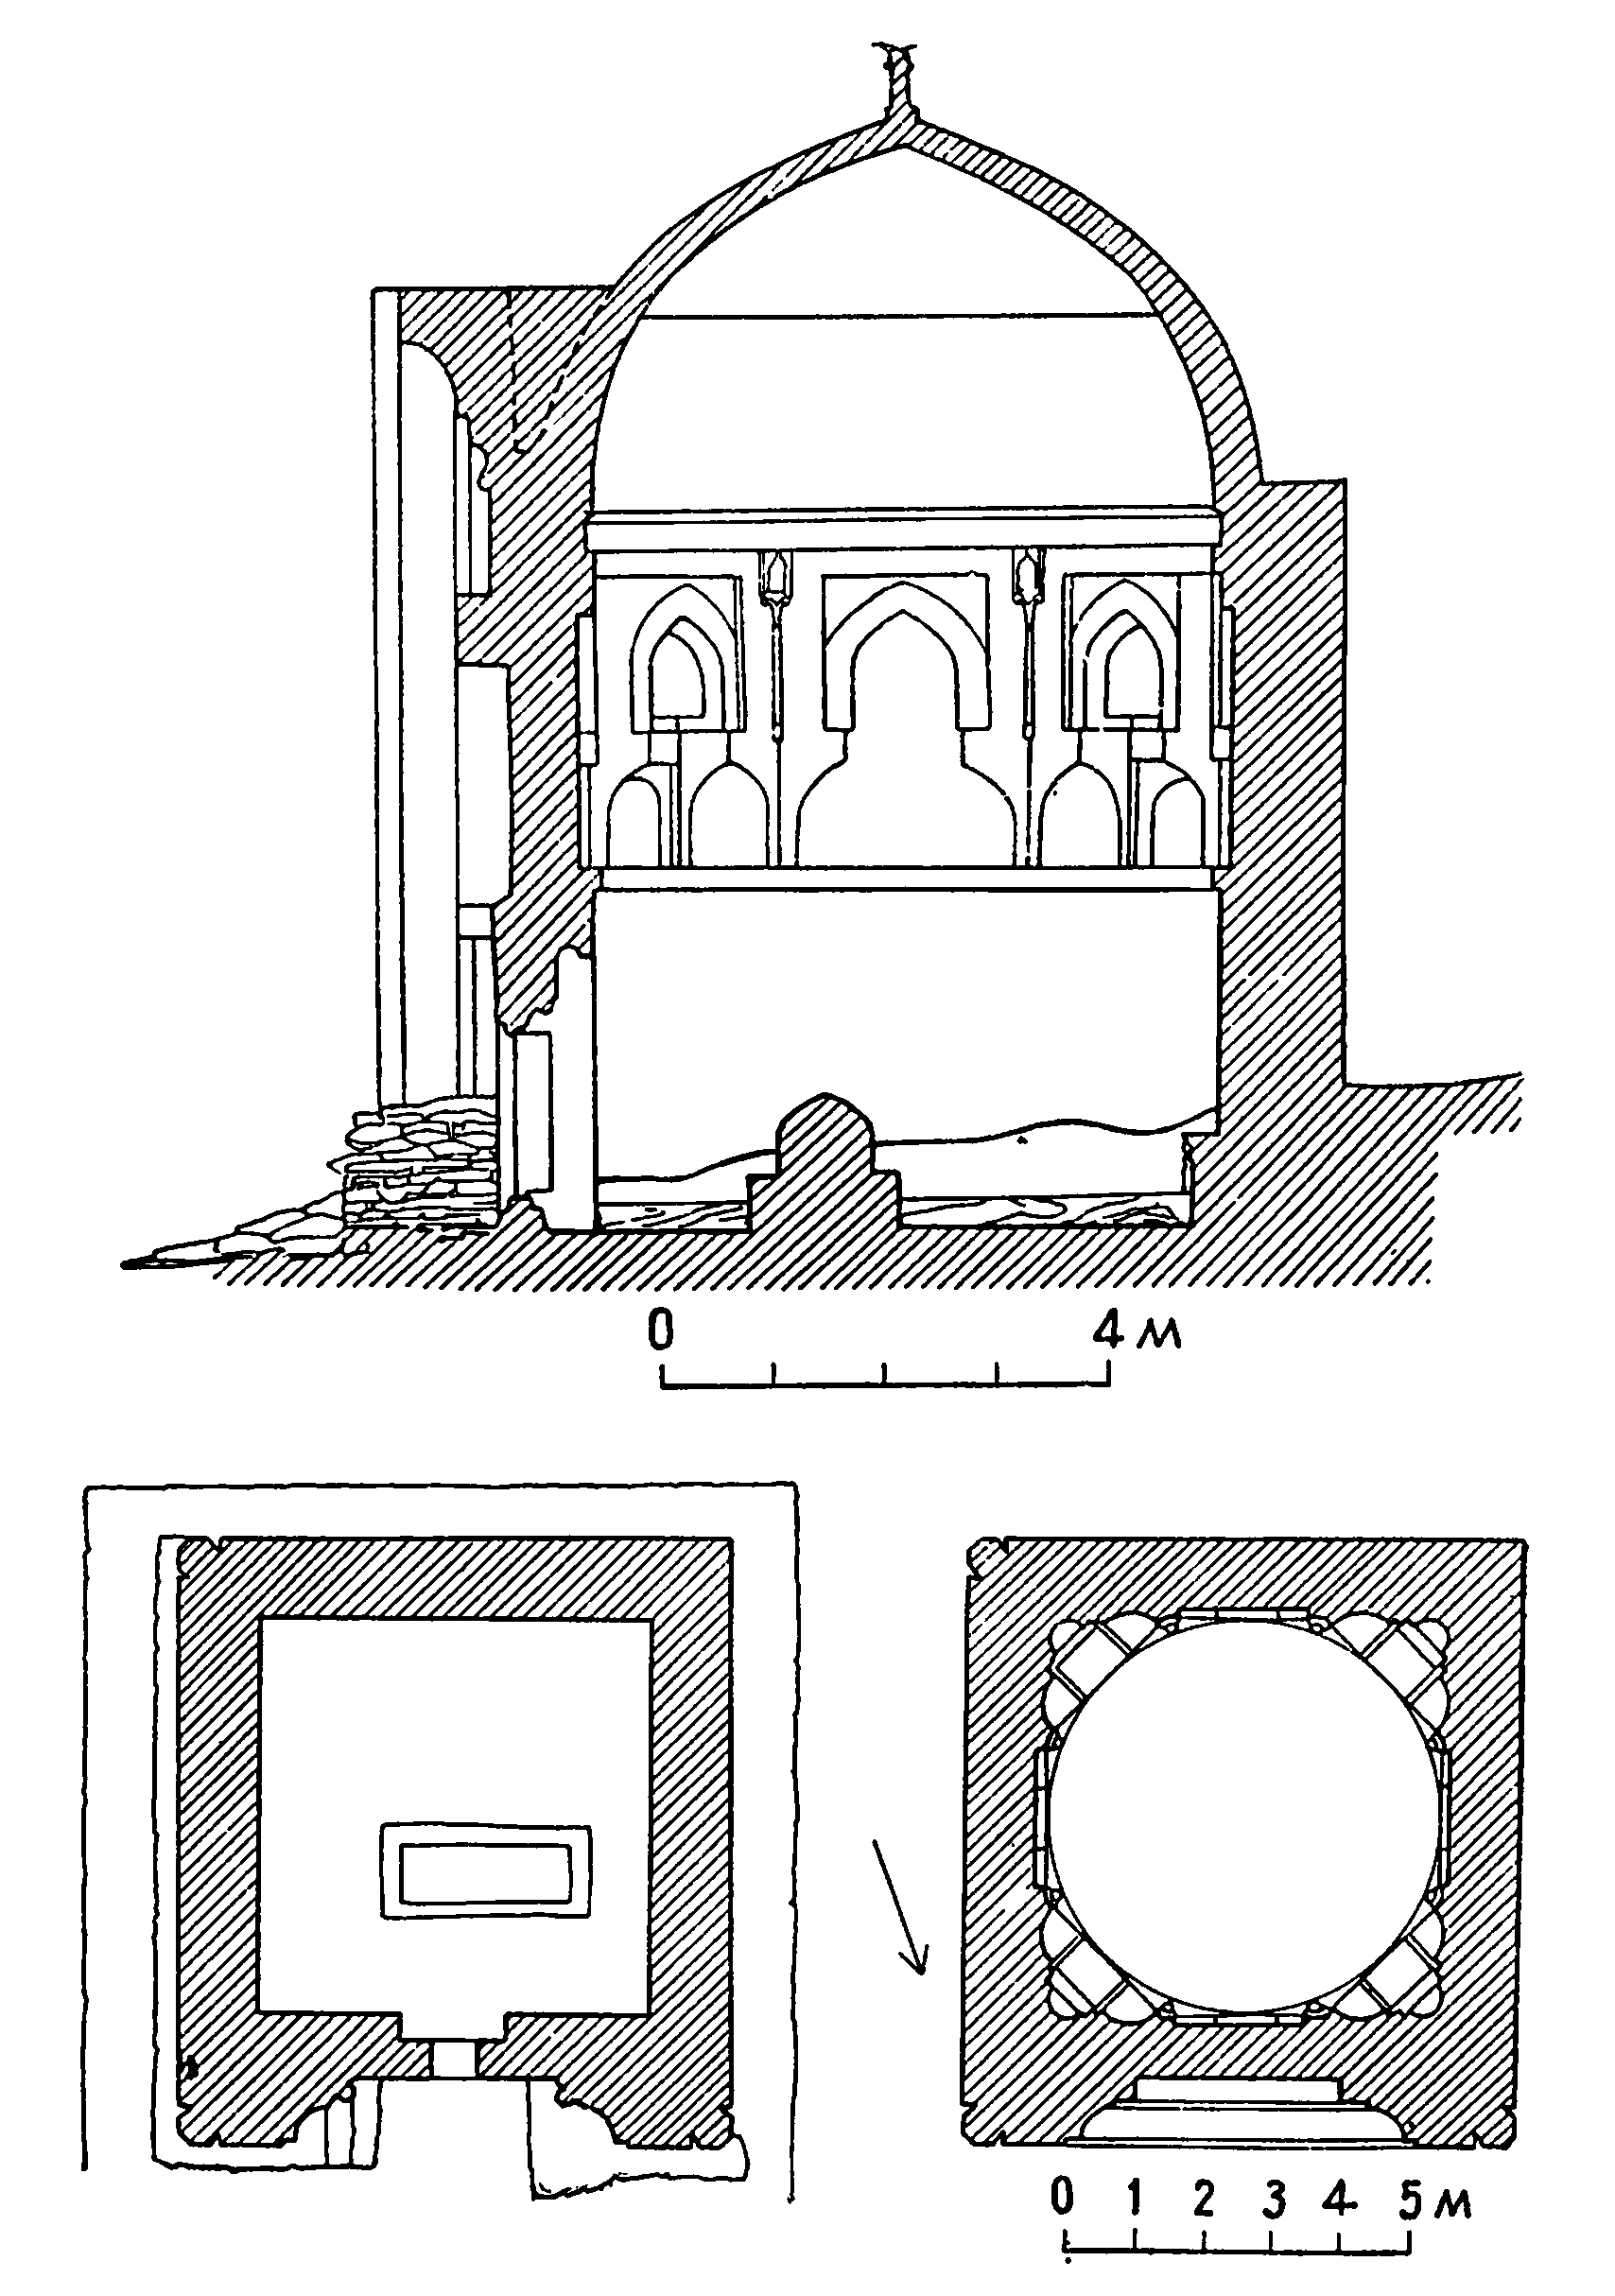 15. Селение Тим (Узбекистан). Мавзолей Араб-ата, 977—978 гг. Общий вид, разрез, планы